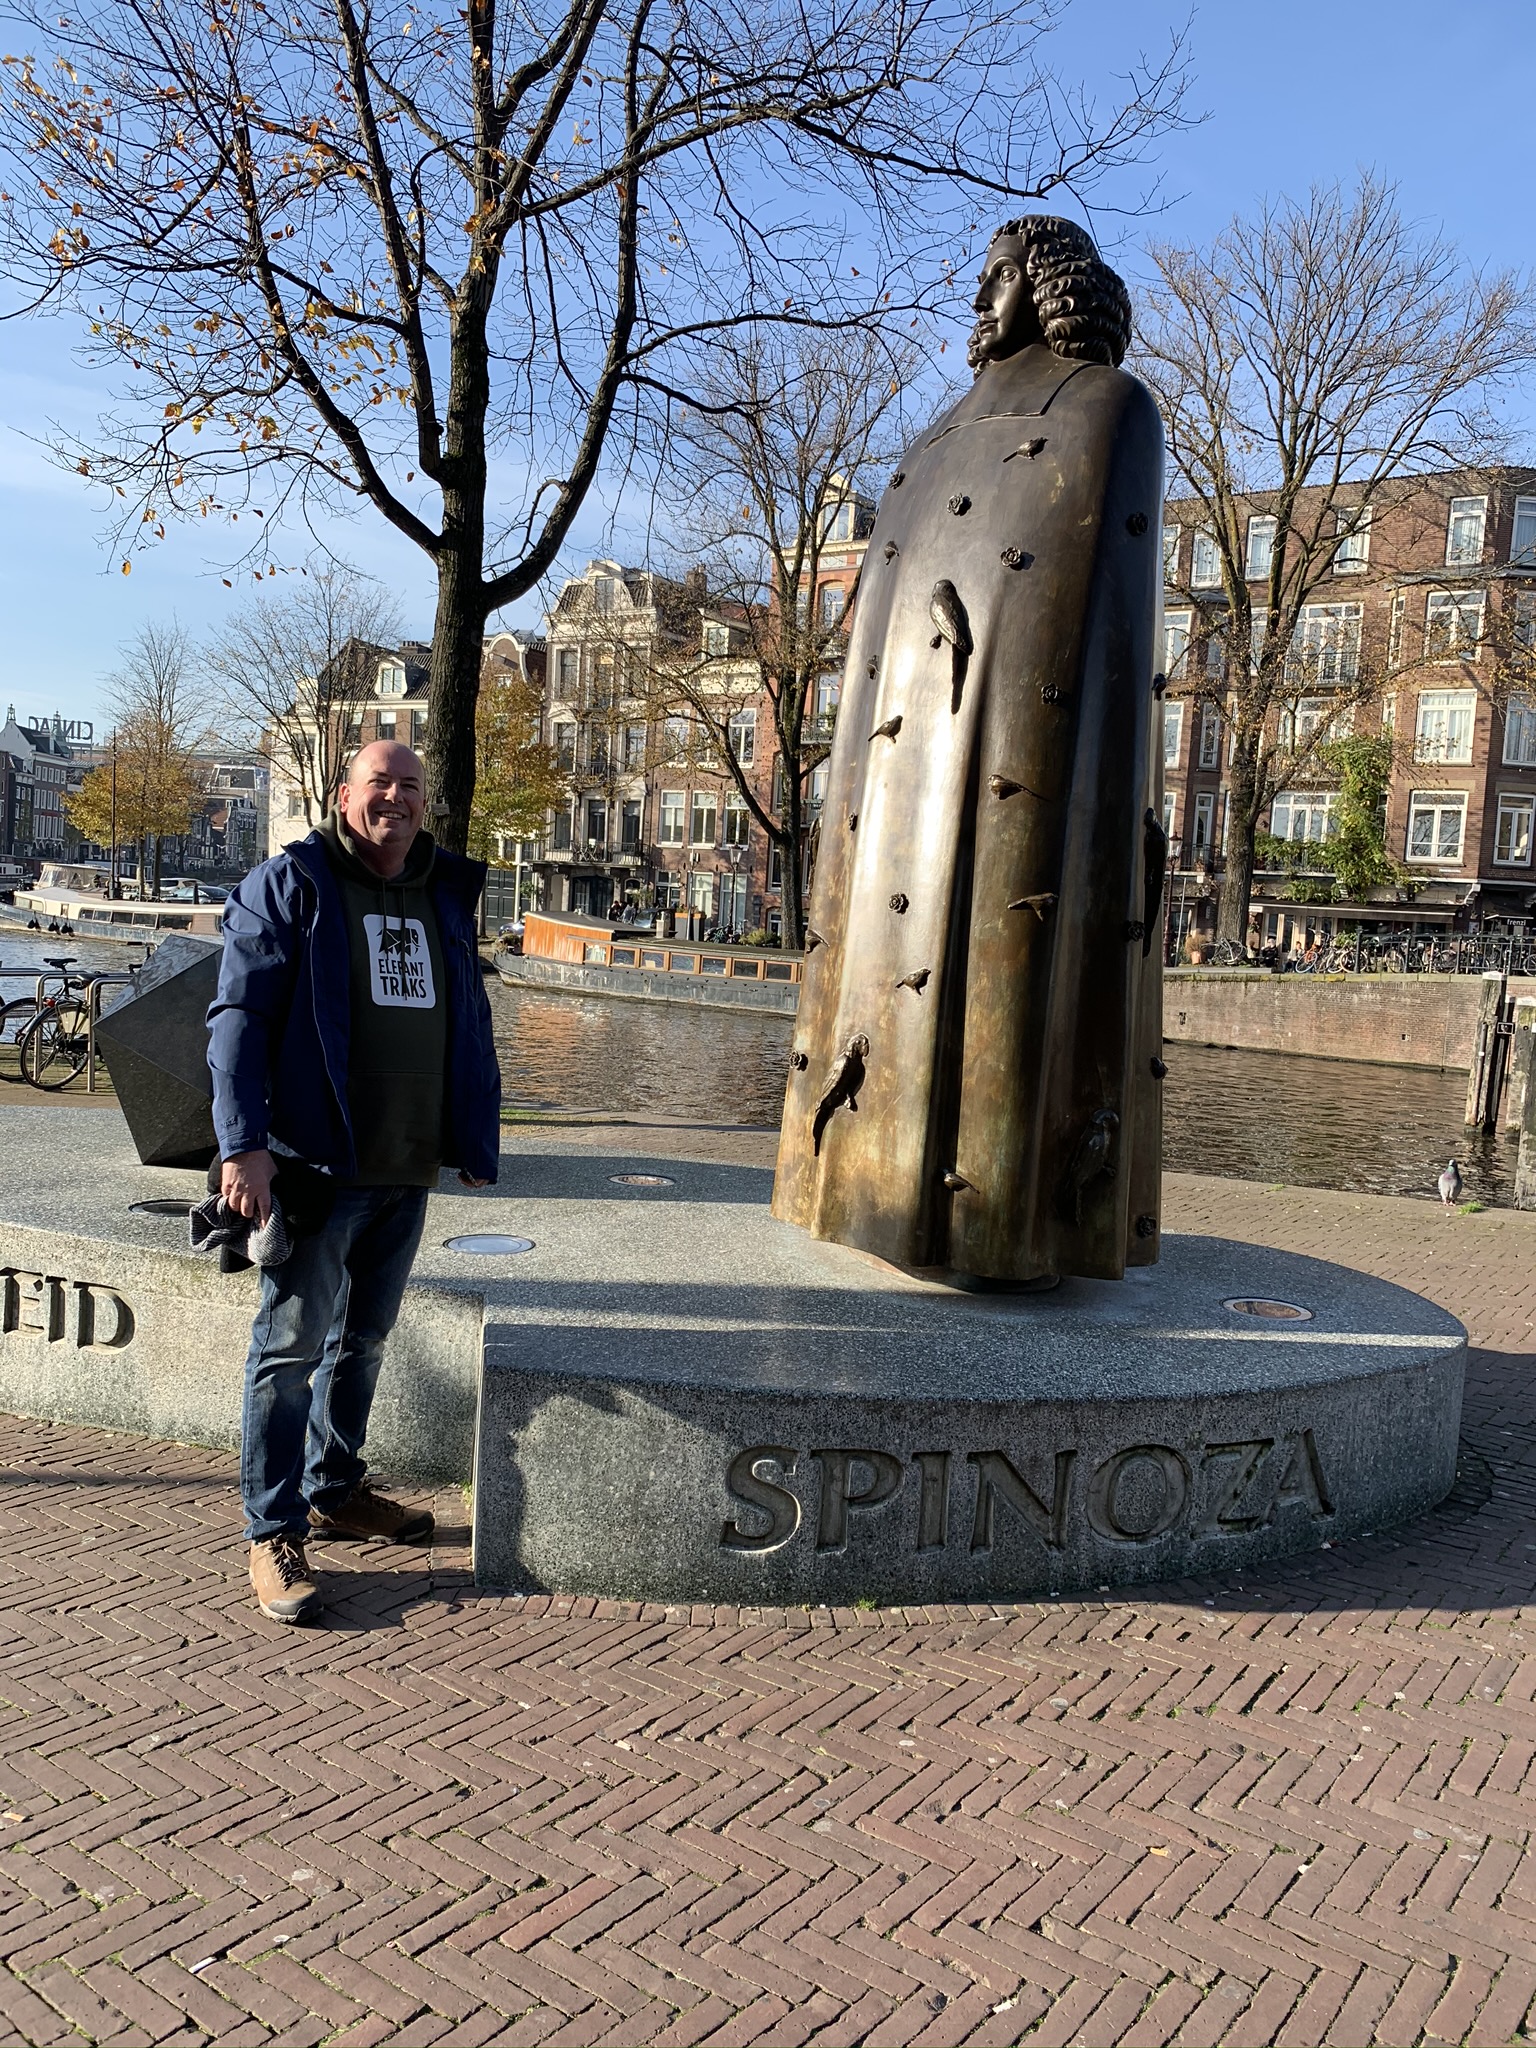 Baruch Spinoza – a Dutch Philosopher